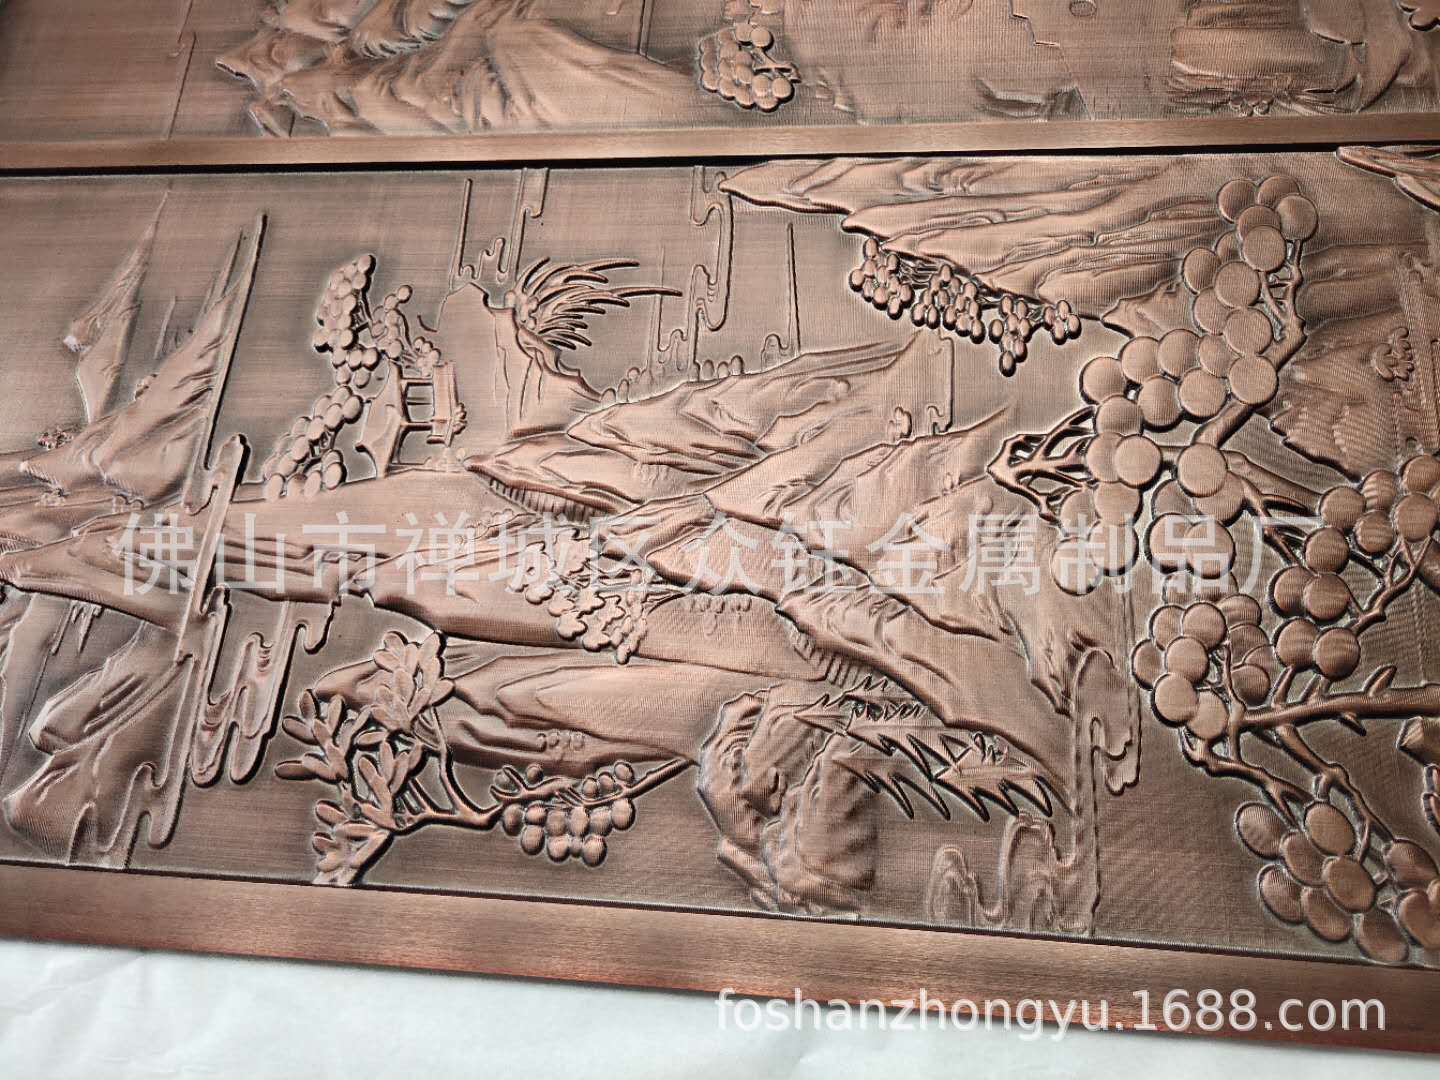 工厂直销 铝板镂空雕刻铝艺屏风隔断铝板屏风 欧式仿古铜浮雕屏风示例图3